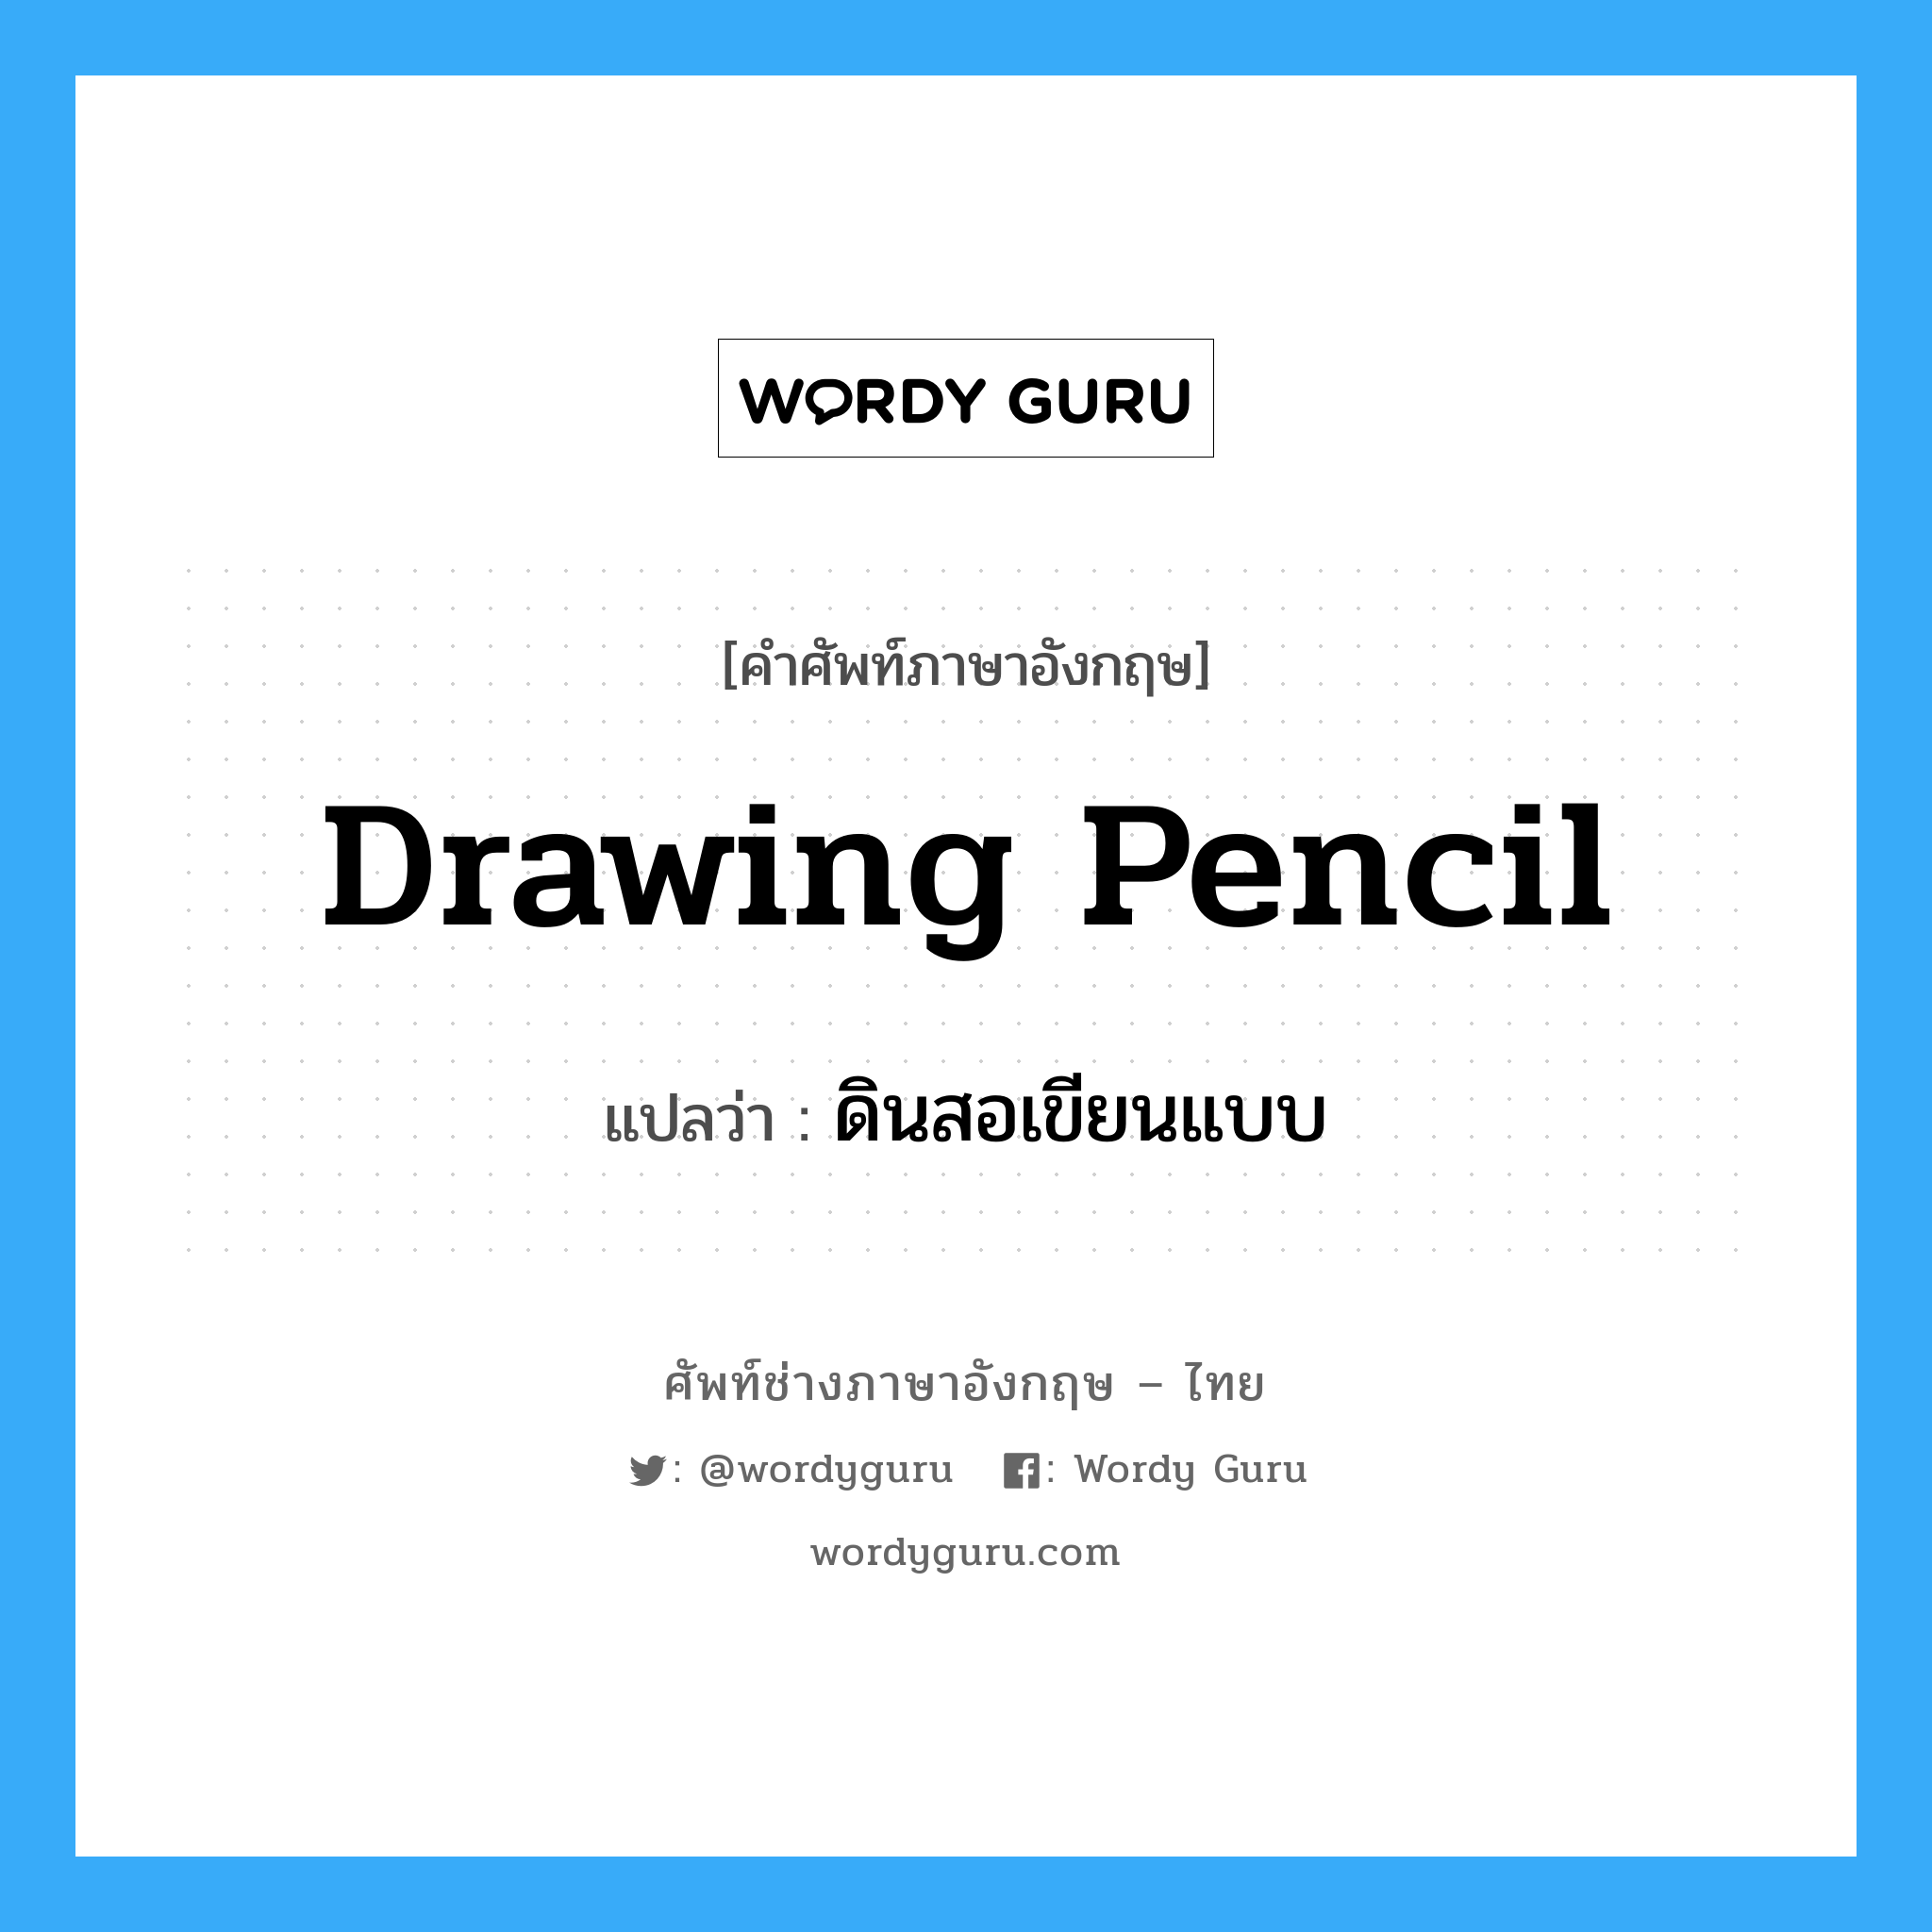 ดินสอเขียนแบบ ภาษาอังกฤษ?, คำศัพท์ช่างภาษาอังกฤษ - ไทย ดินสอเขียนแบบ คำศัพท์ภาษาอังกฤษ ดินสอเขียนแบบ แปลว่า drawing pencil